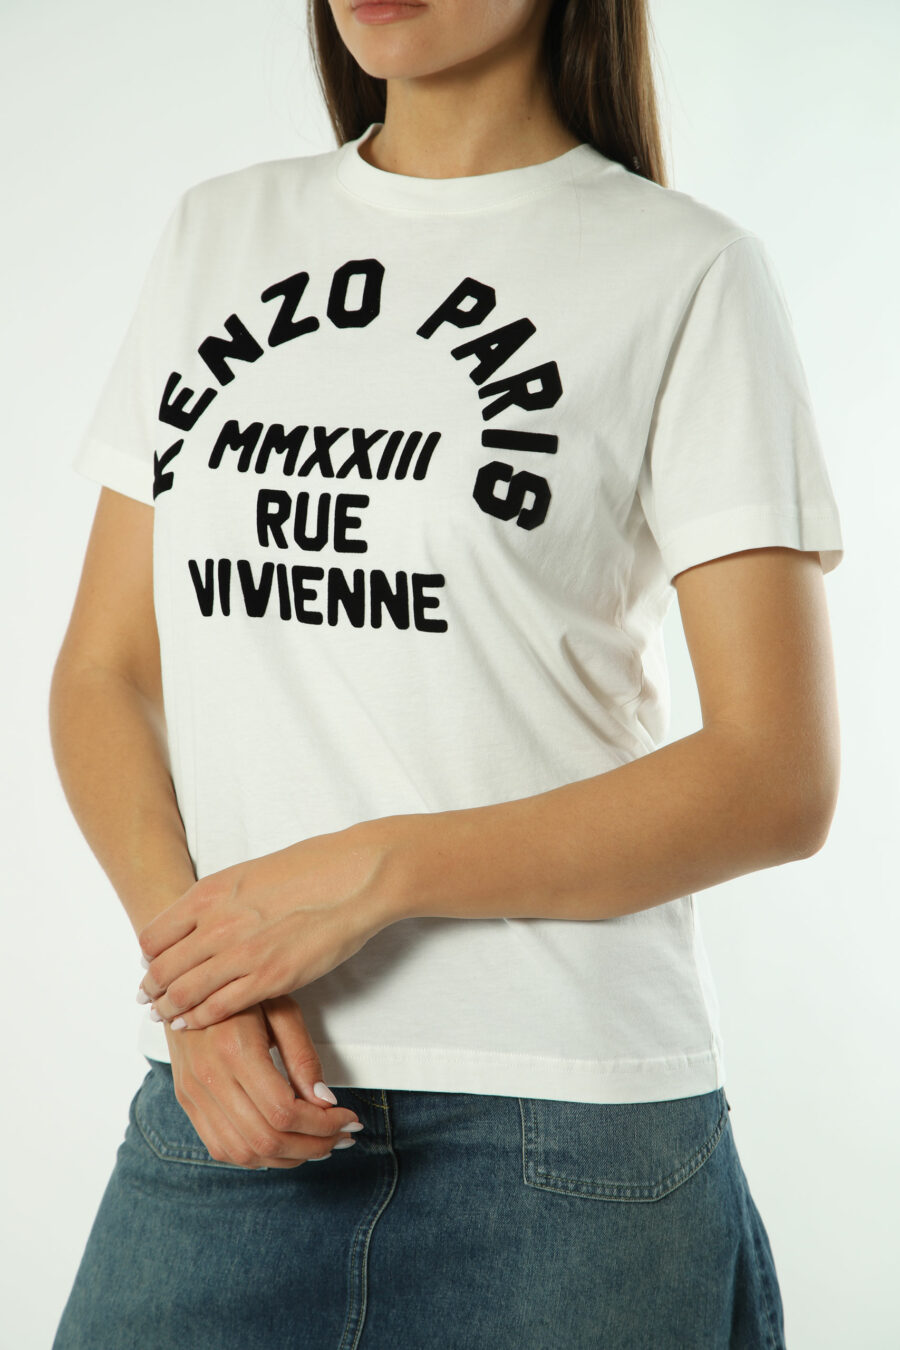 Weißes T-Shirt mit schwarzem "rue vivenne" Maxilogo - Fotos 1321